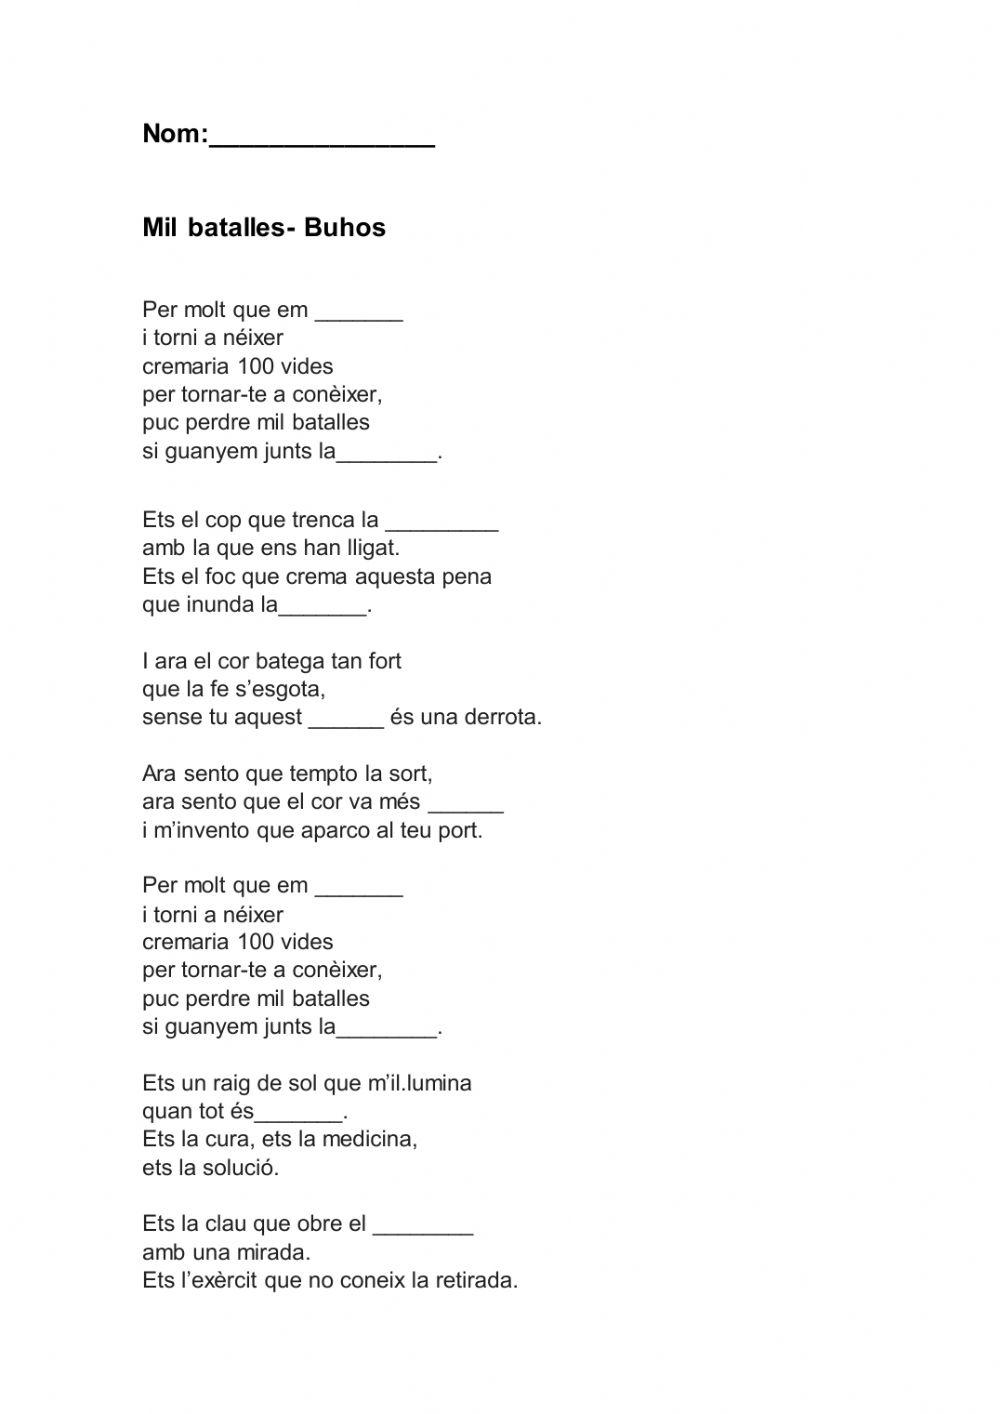 Dictat cançó mil batalles- Buhos